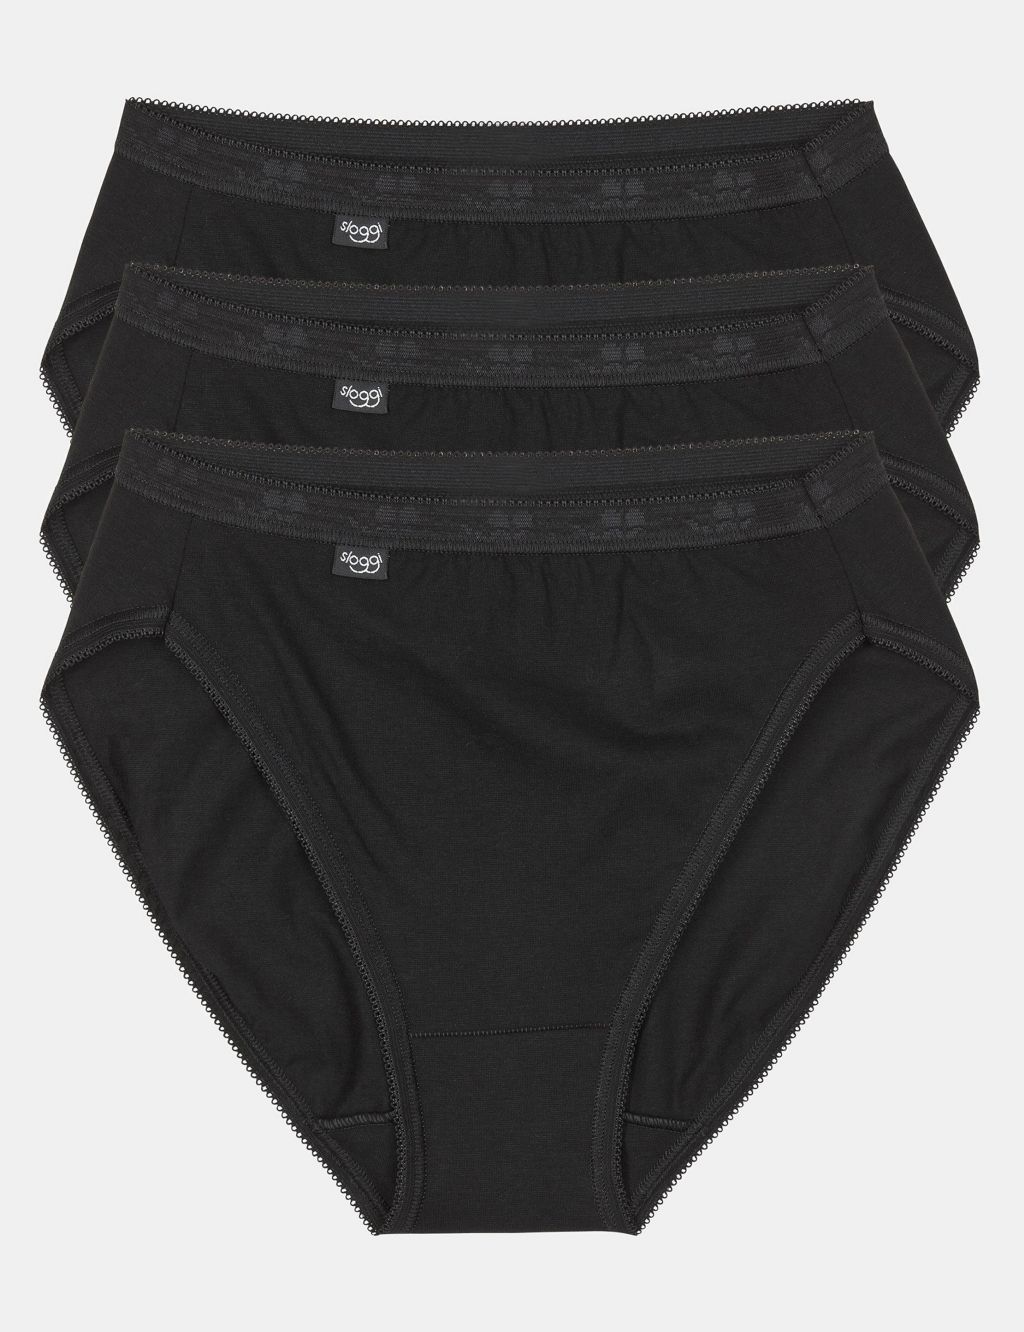 Sloggi Tai Light Period Pants - Black - Curvy Bras